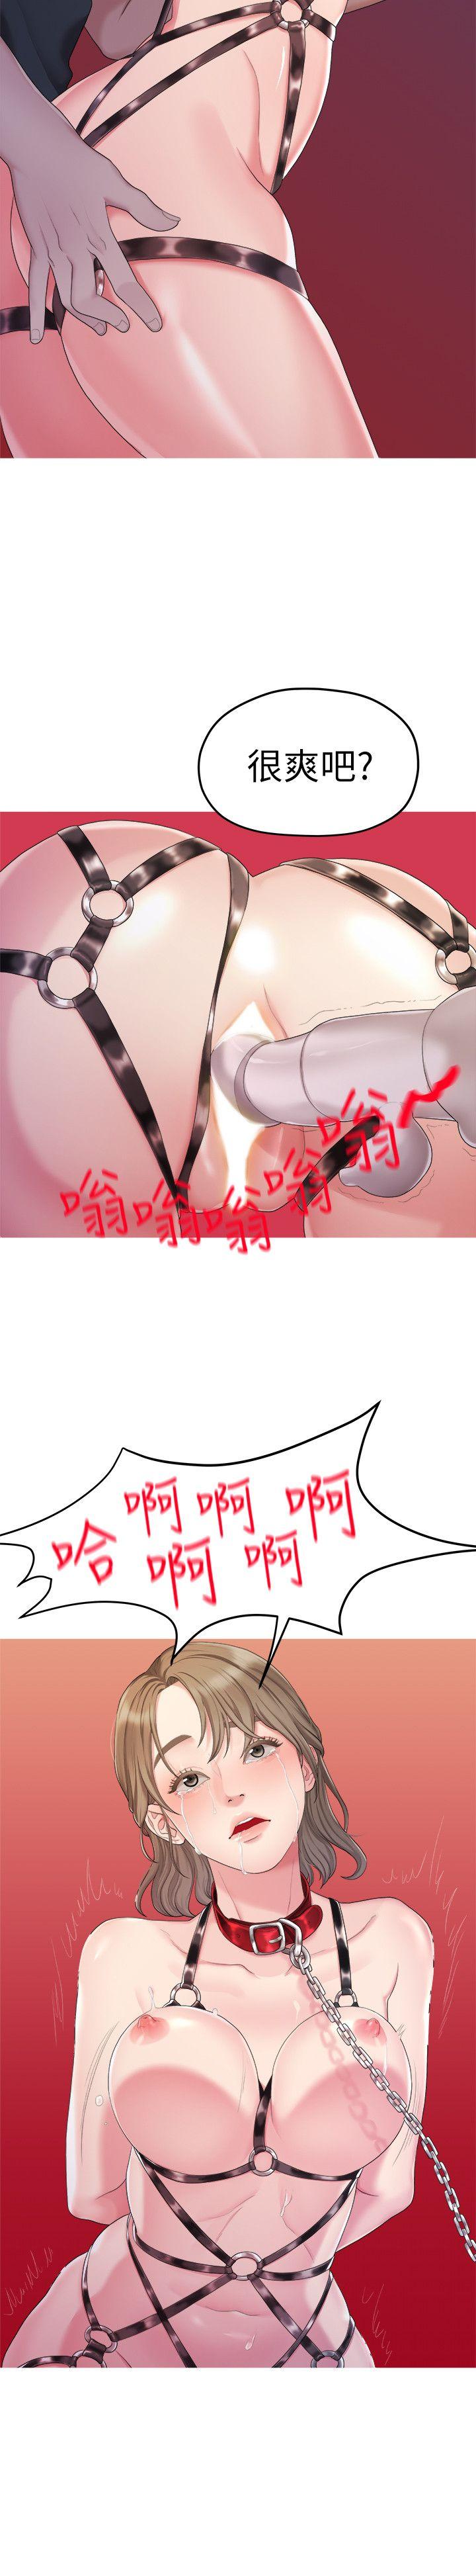 韩国污漫画 我們的非常關系 第24话-拜託，救救我! 17